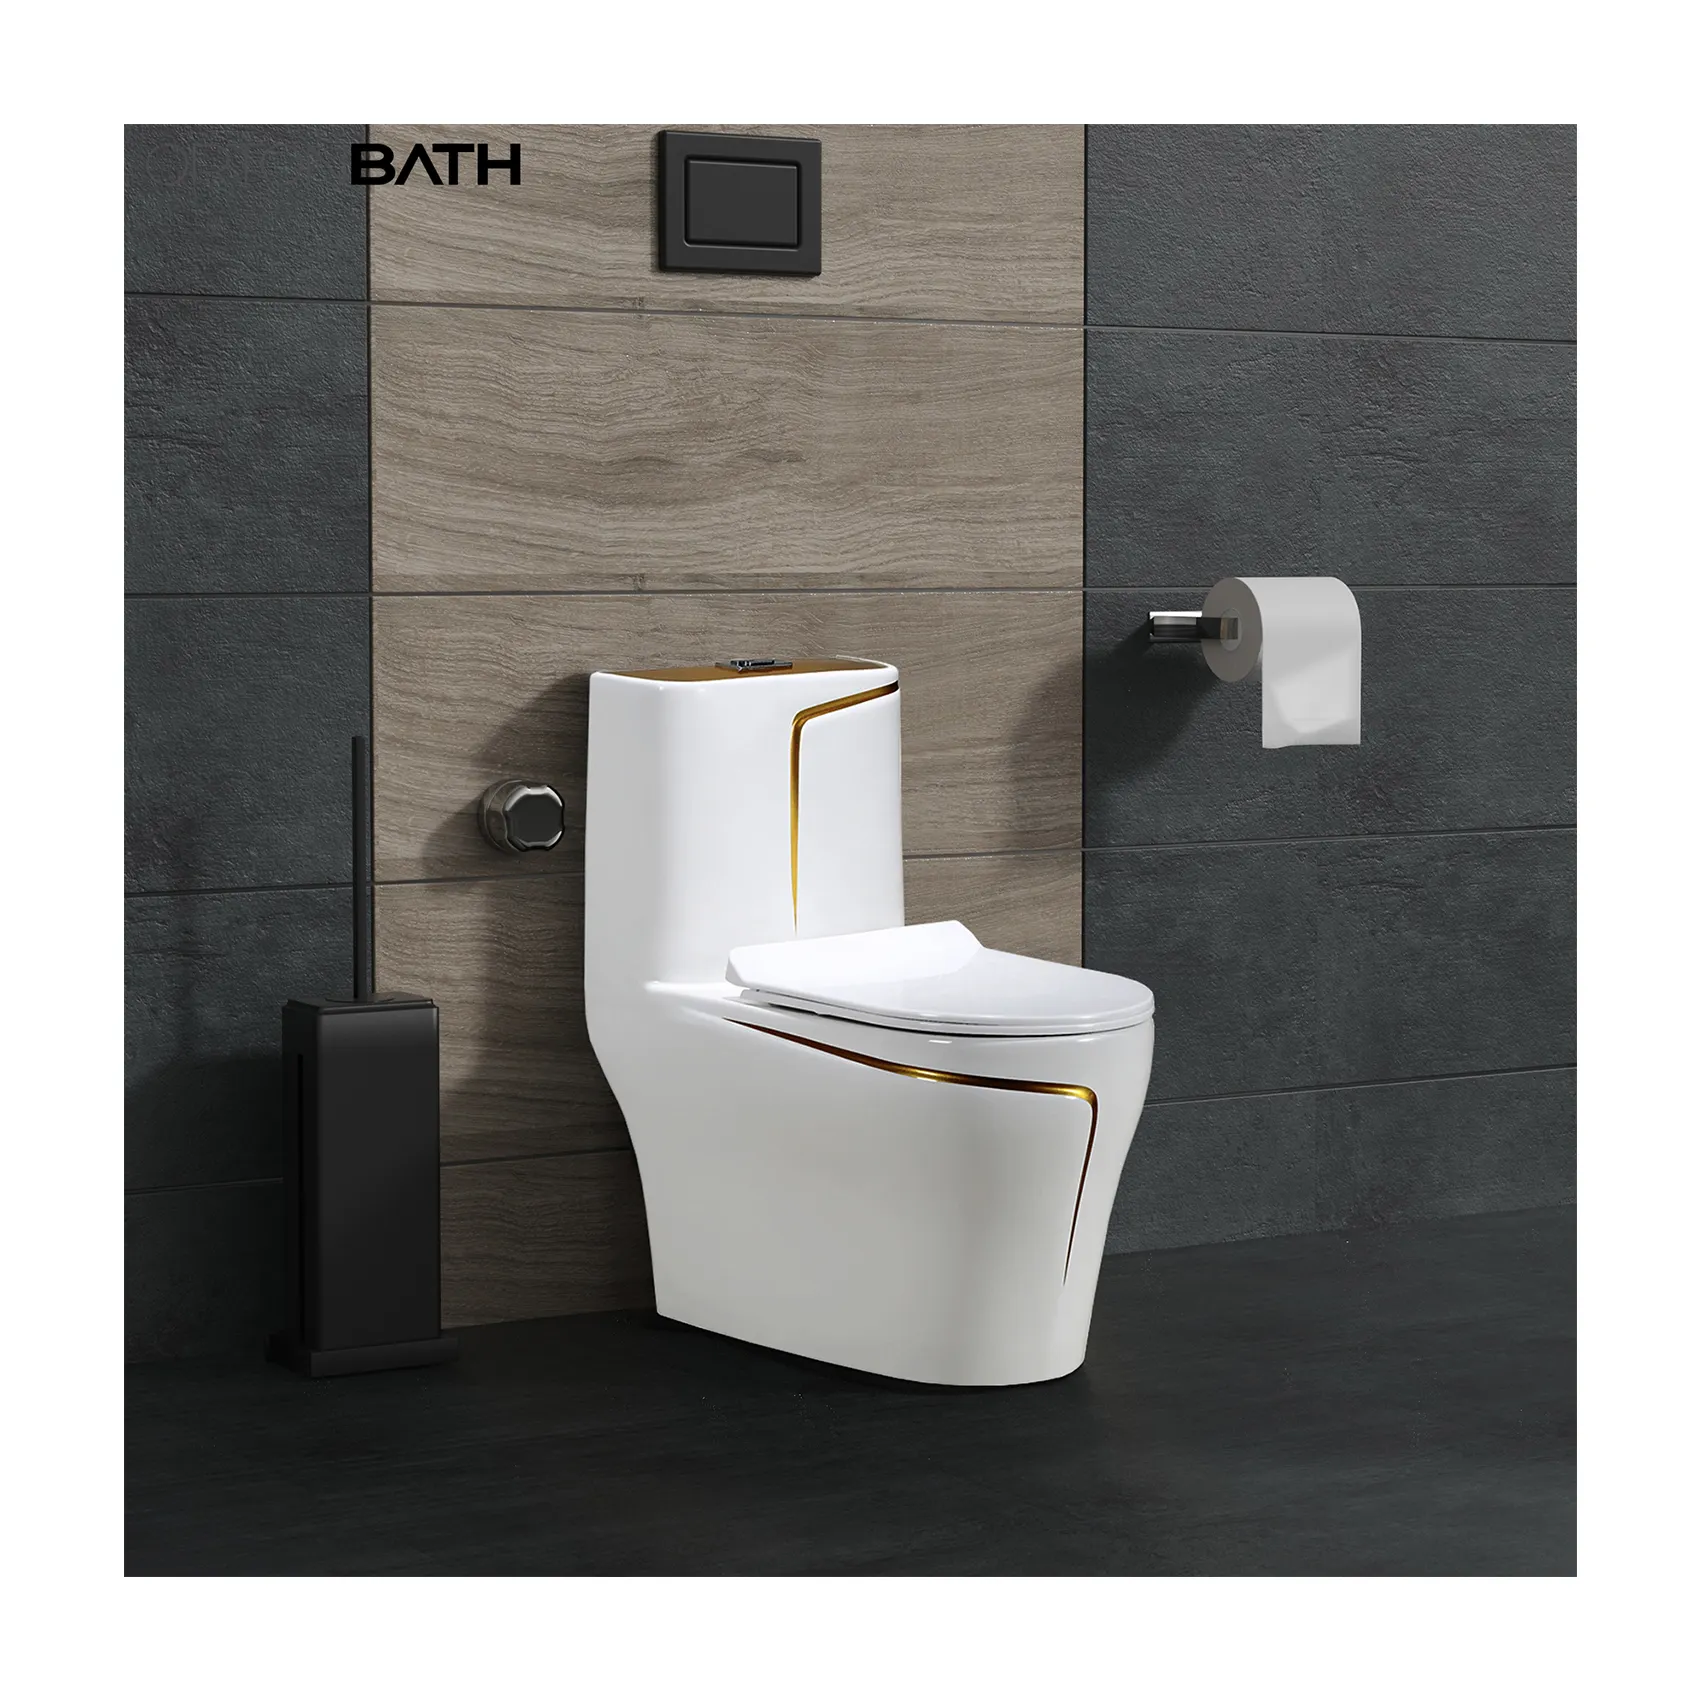 ORTON BATH Golden Line Galvani sieren Graue Toiletten schüssel 1 Stück Keramik Wassers chrank WC Toilette & Zubehör